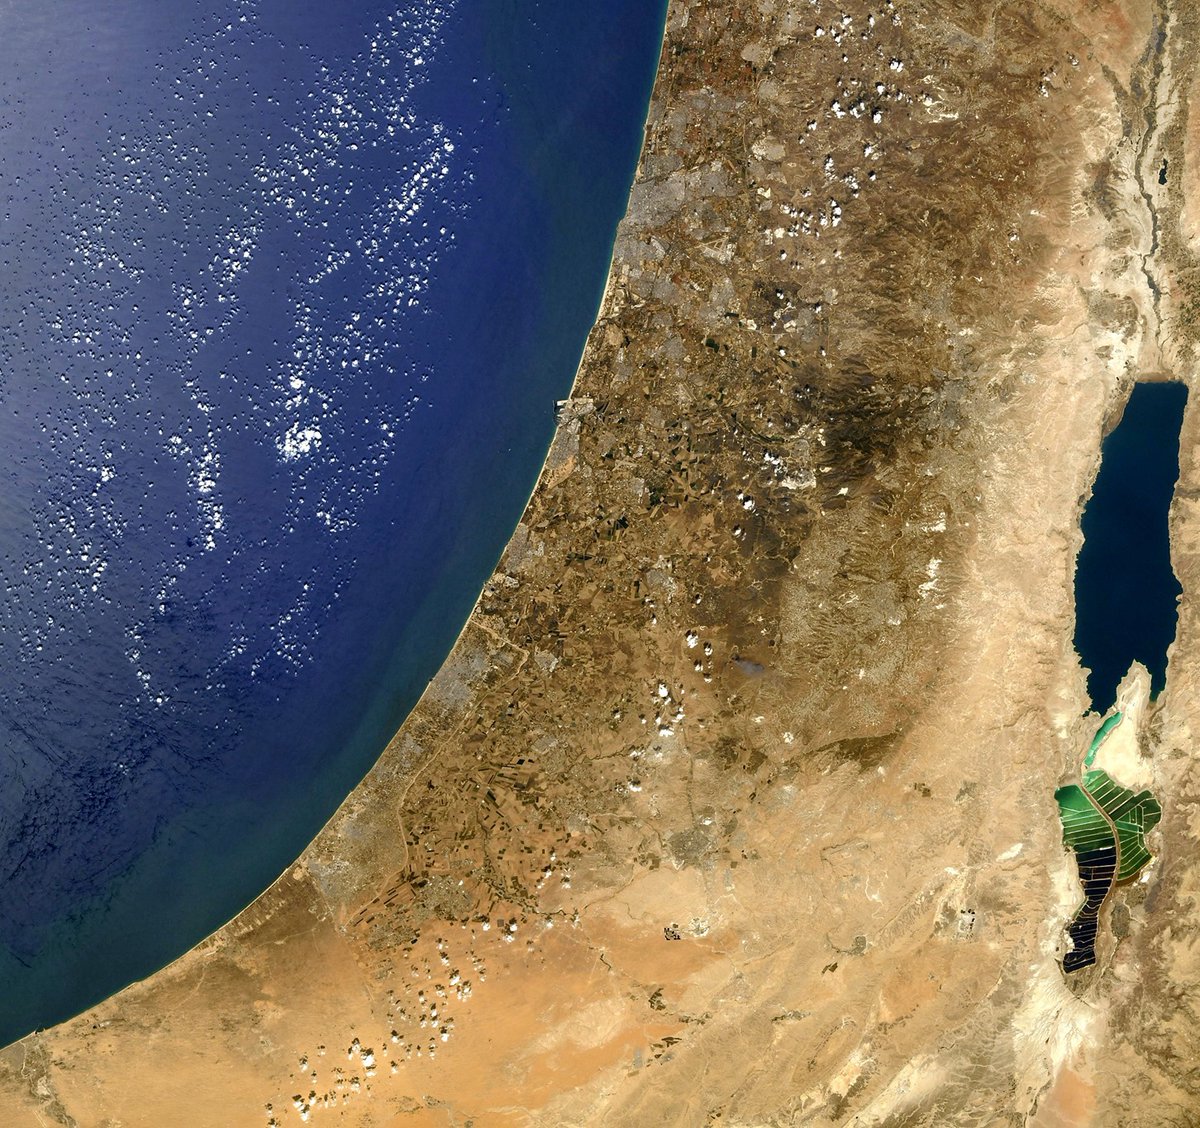 رائد الفضاء الفرنسي توماس بيسكيه التقط هذه الصورة الجميلة فوق إسرائيل من محطة الفضاء الدولية  …